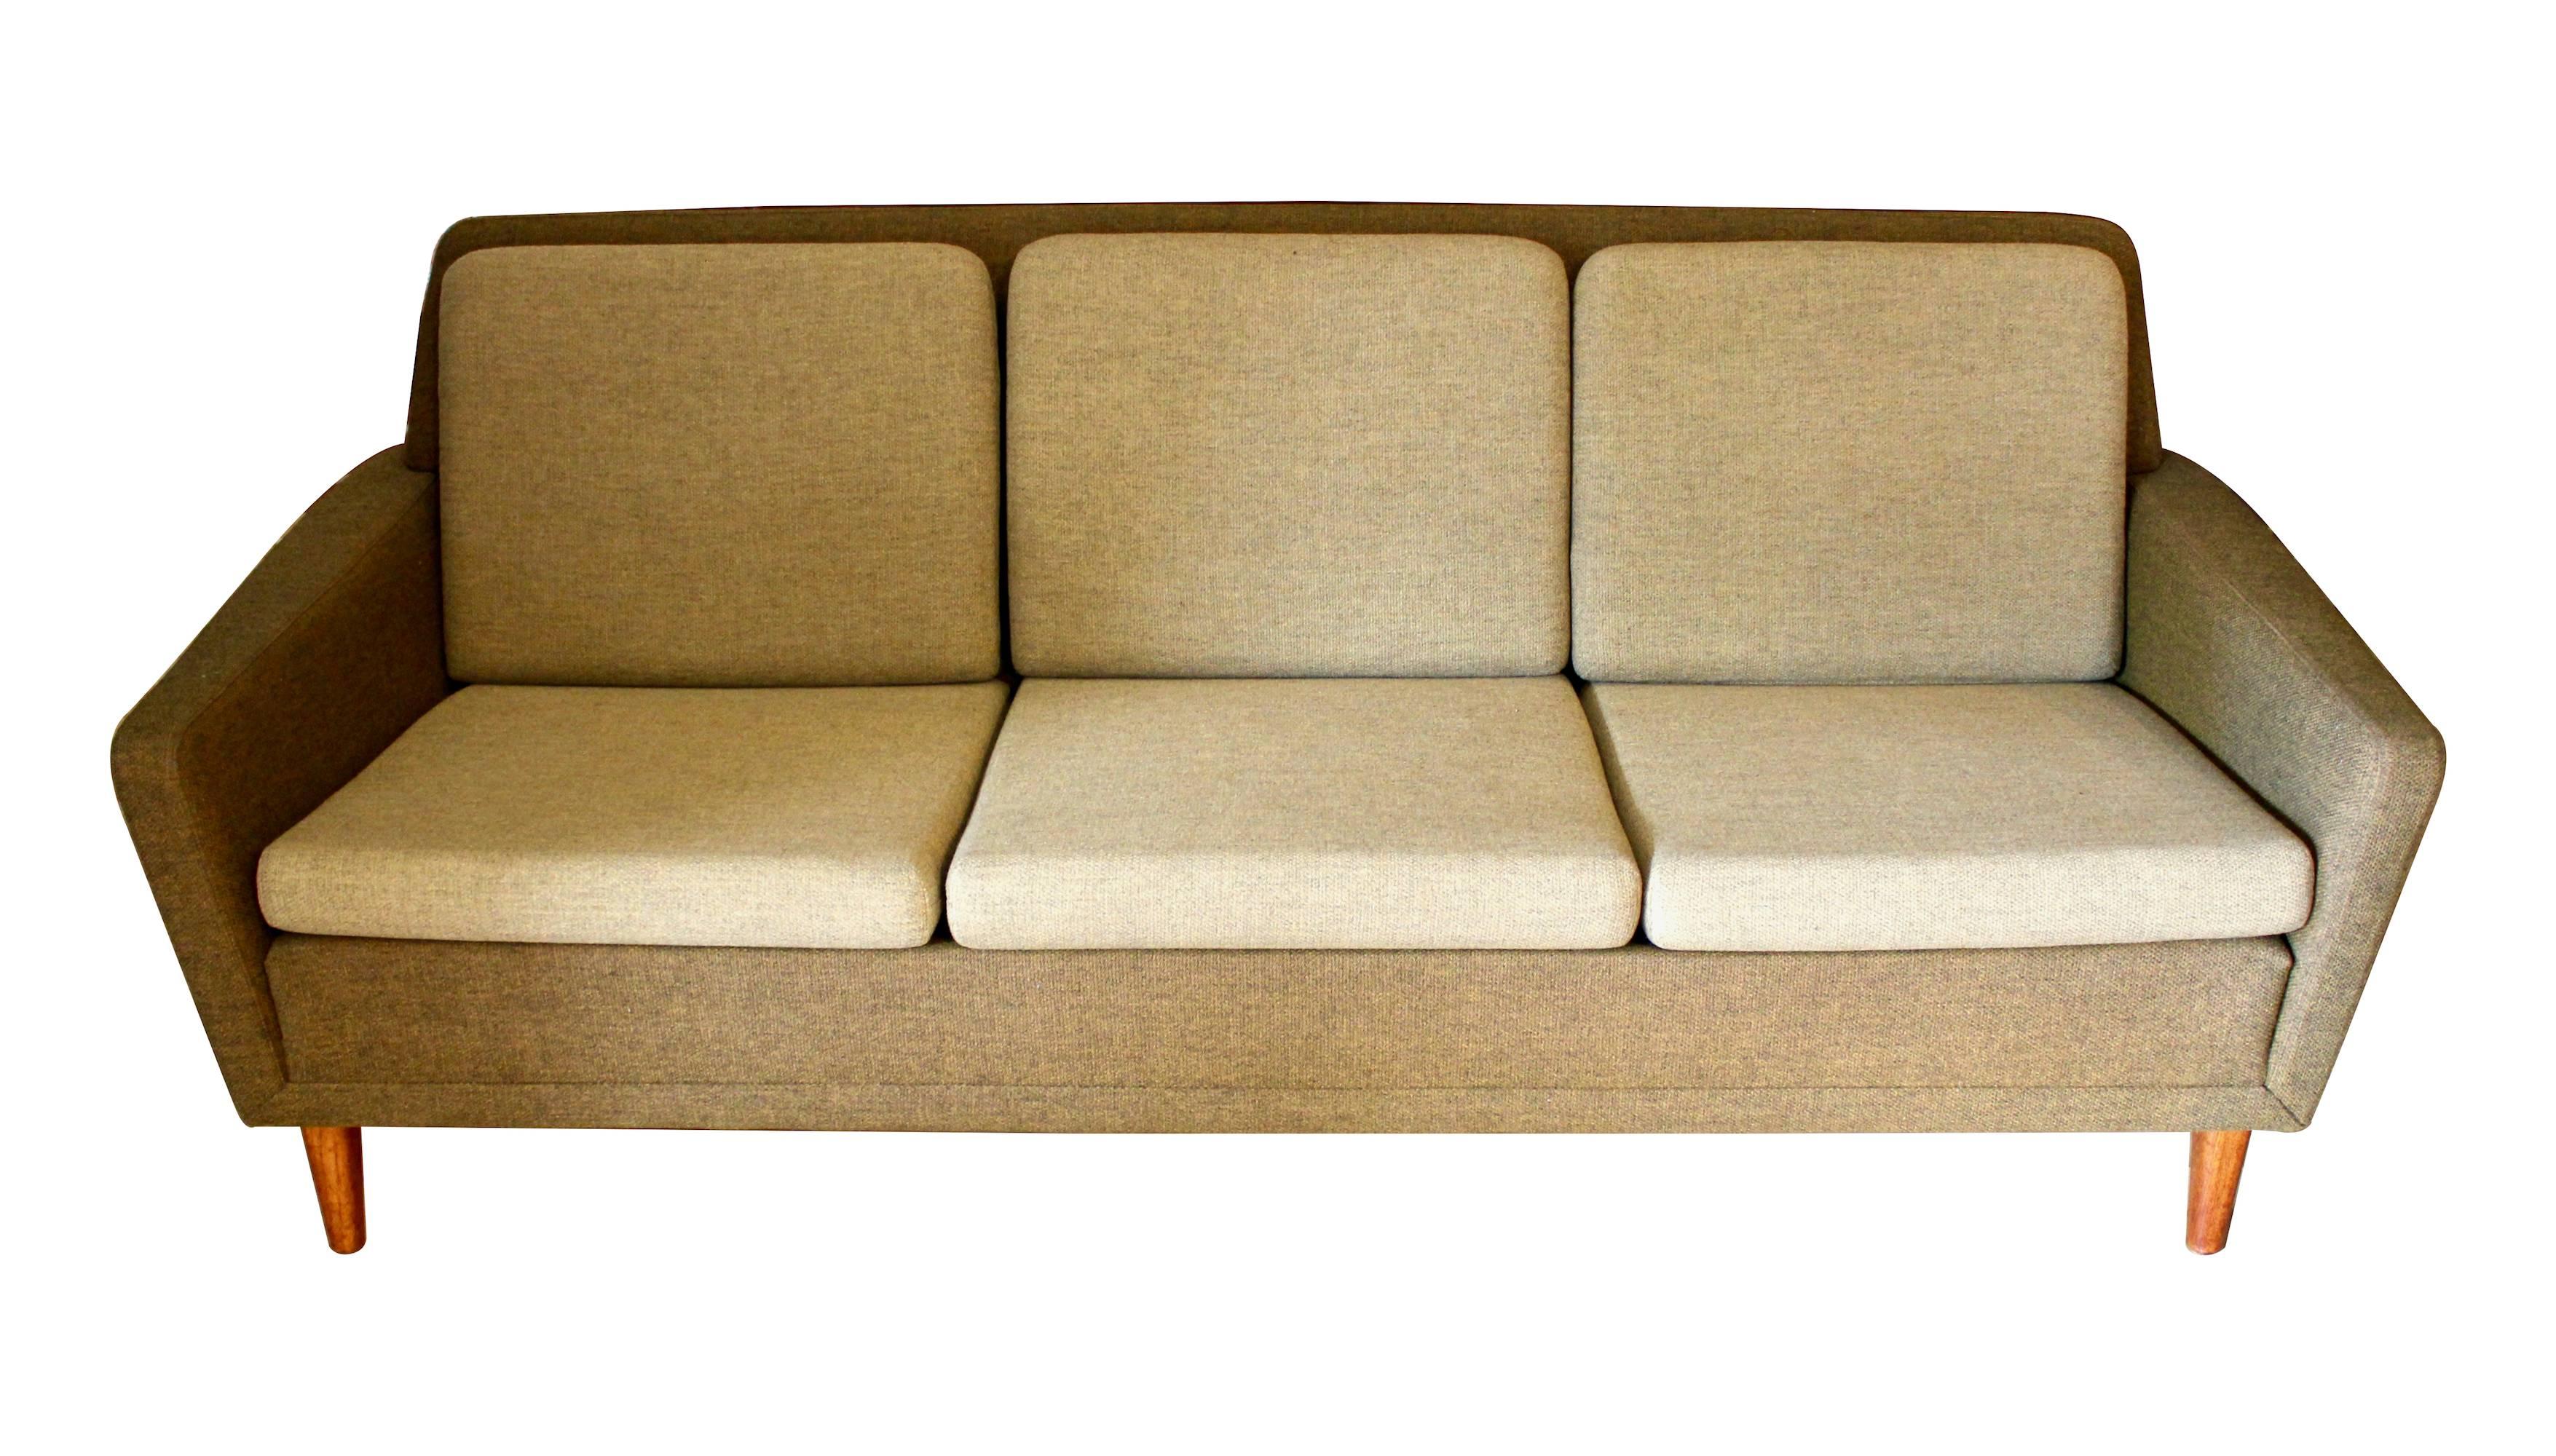 Scandinavian Modern Upholstered Sofa by Folke Ohlsson for DUX, circa 1970